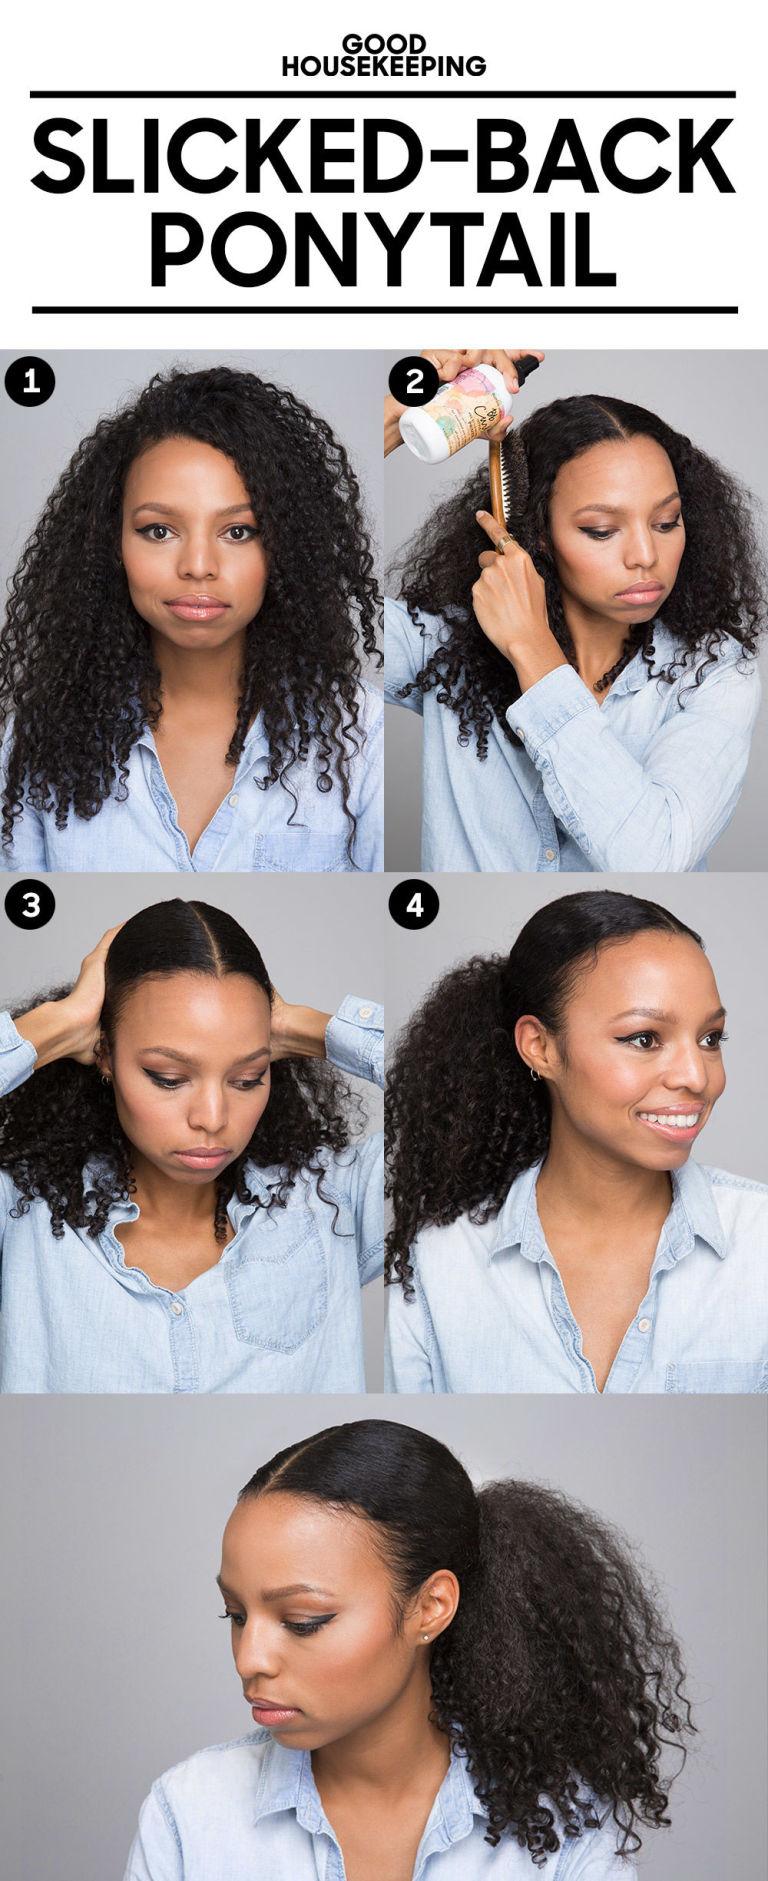 17 πανέξυπνα tips για σγουρά μαλλιά!